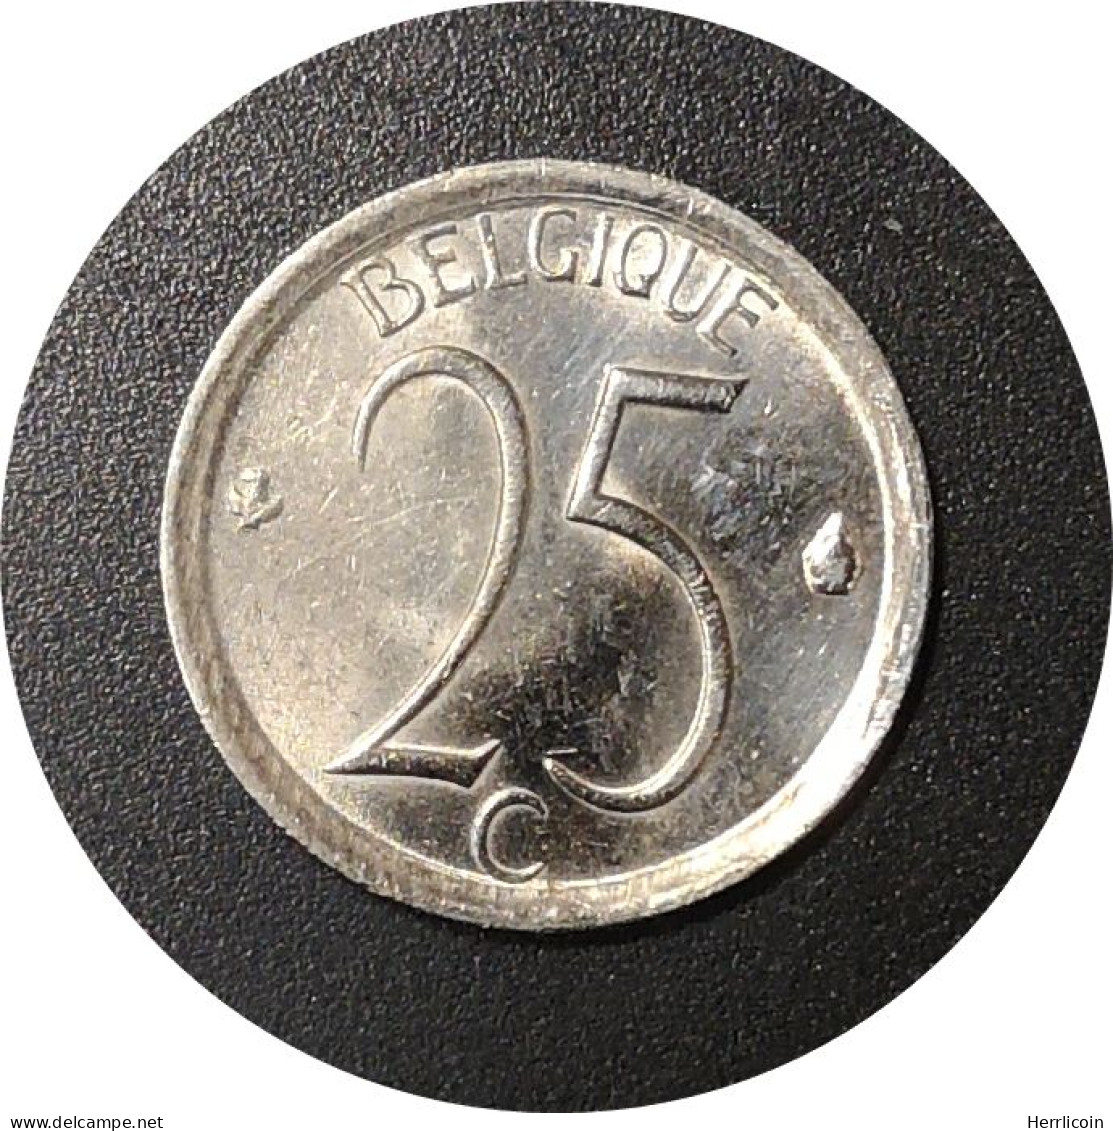 Monnaie Belgique - 1969 - 25 Centimes - Baudouin Ier En Français - 25 Cent